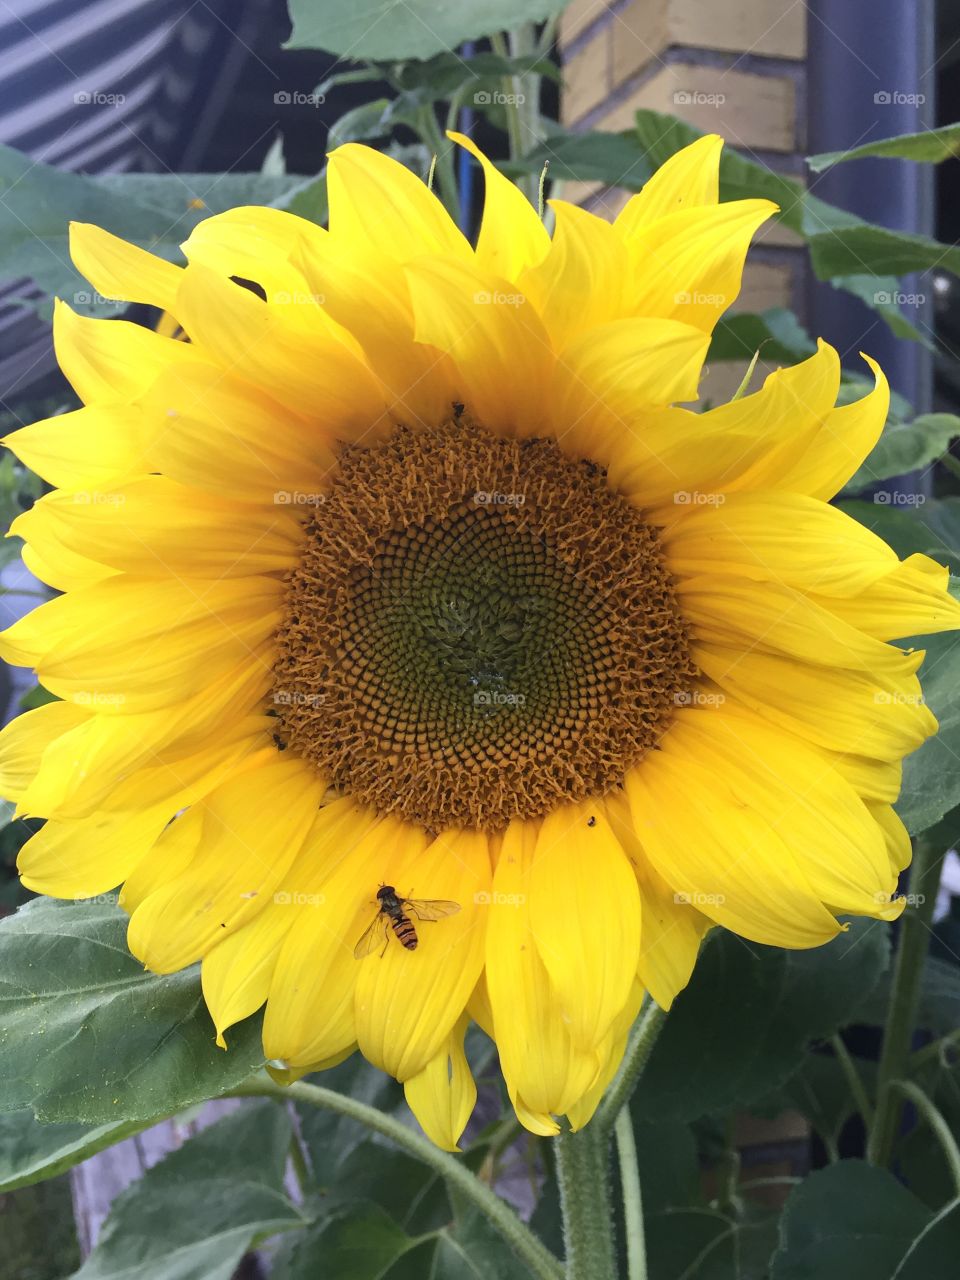 Sunflower in full bloom